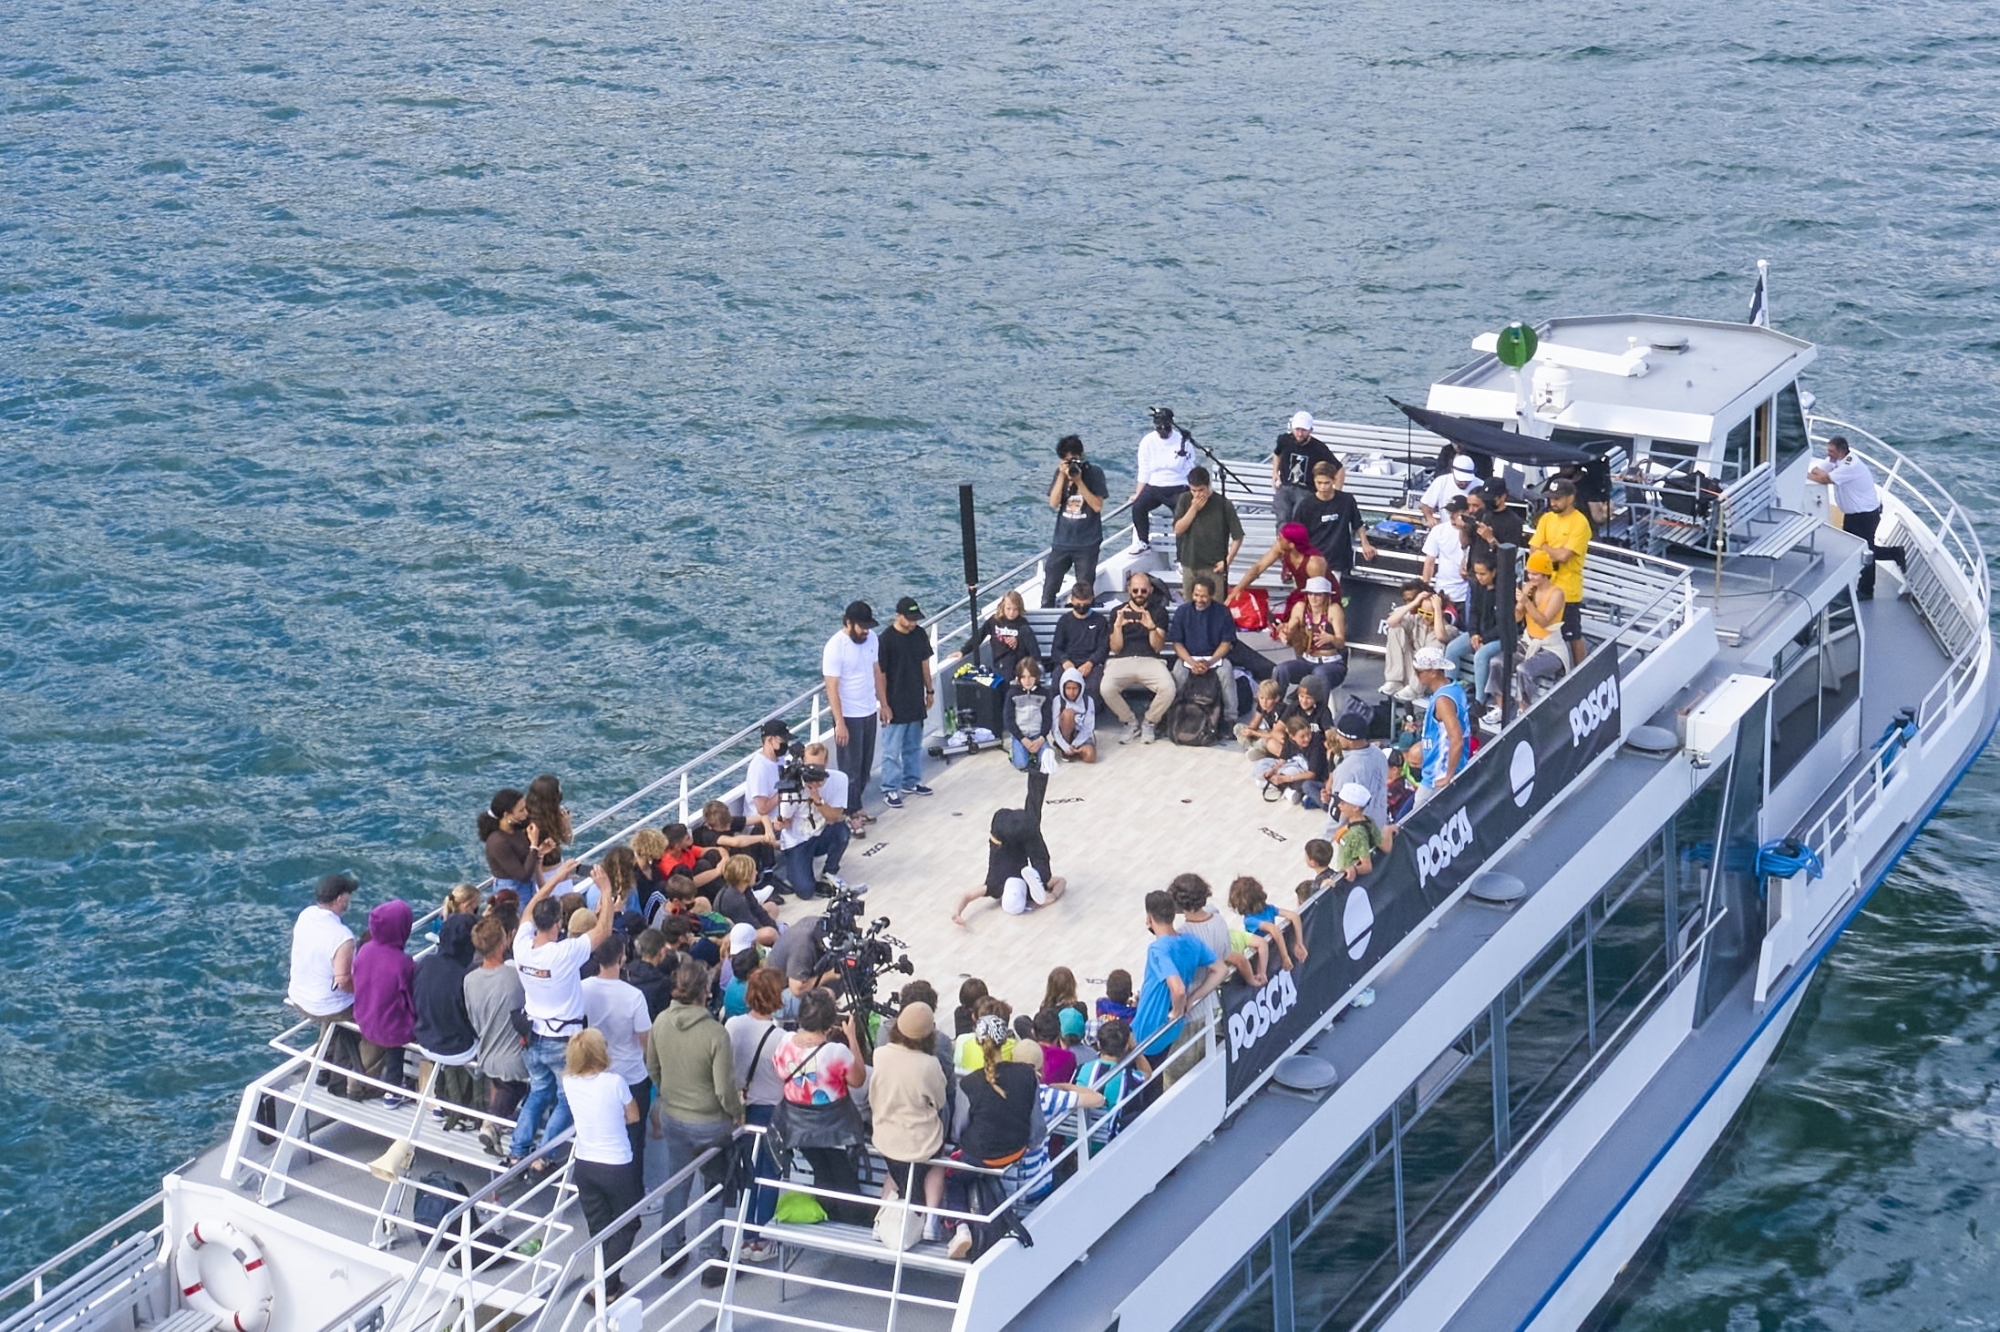 Des danseurs s'affrontant sur un bateau: en voilà une scène inhabituelle!